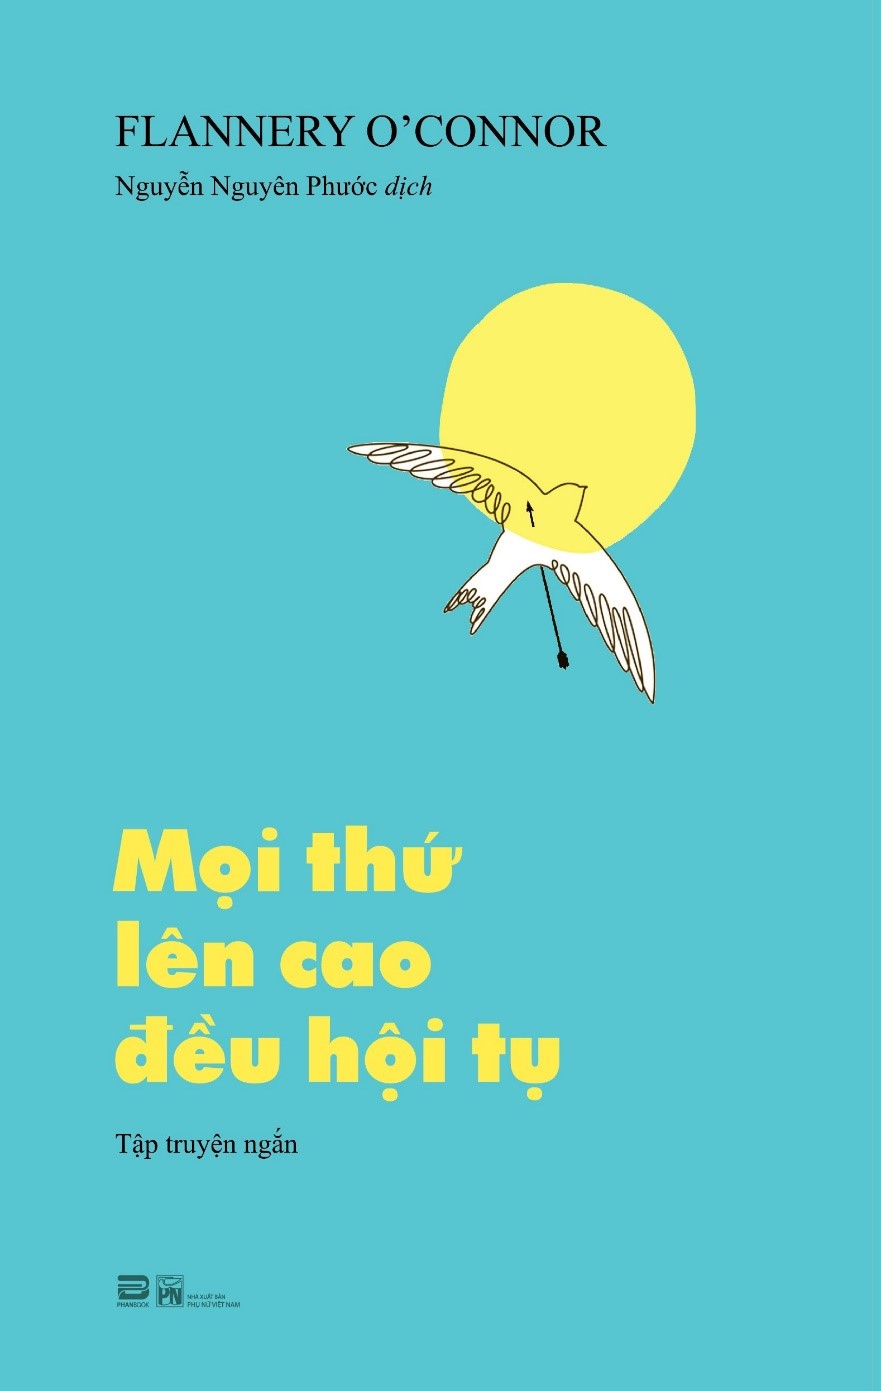 Hình ảnh MỌI THỨ LÊN CAO ĐỀU HỘI TỤ - Flannery O’Connor - Nguyễn Nguyên Phước dịch (bìa mềm)